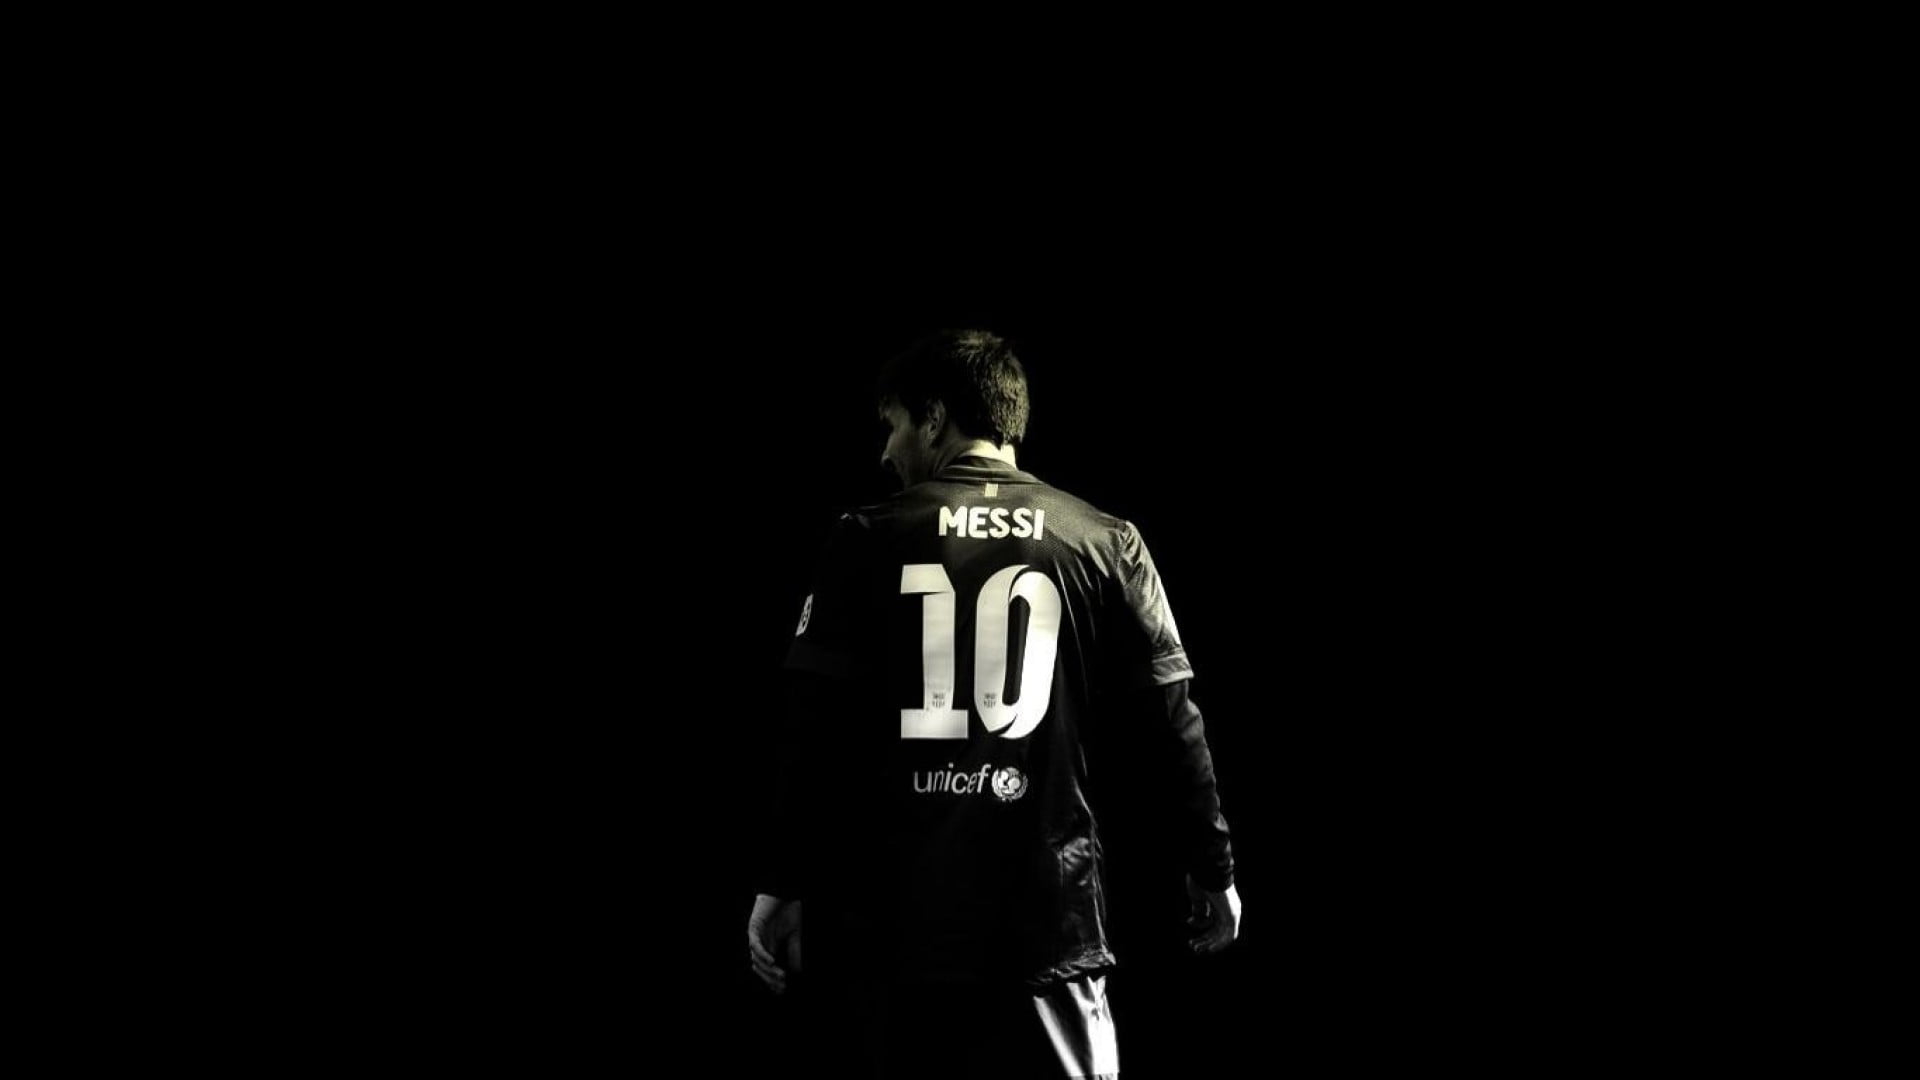 Ảnh nền Messi màu đen - all black